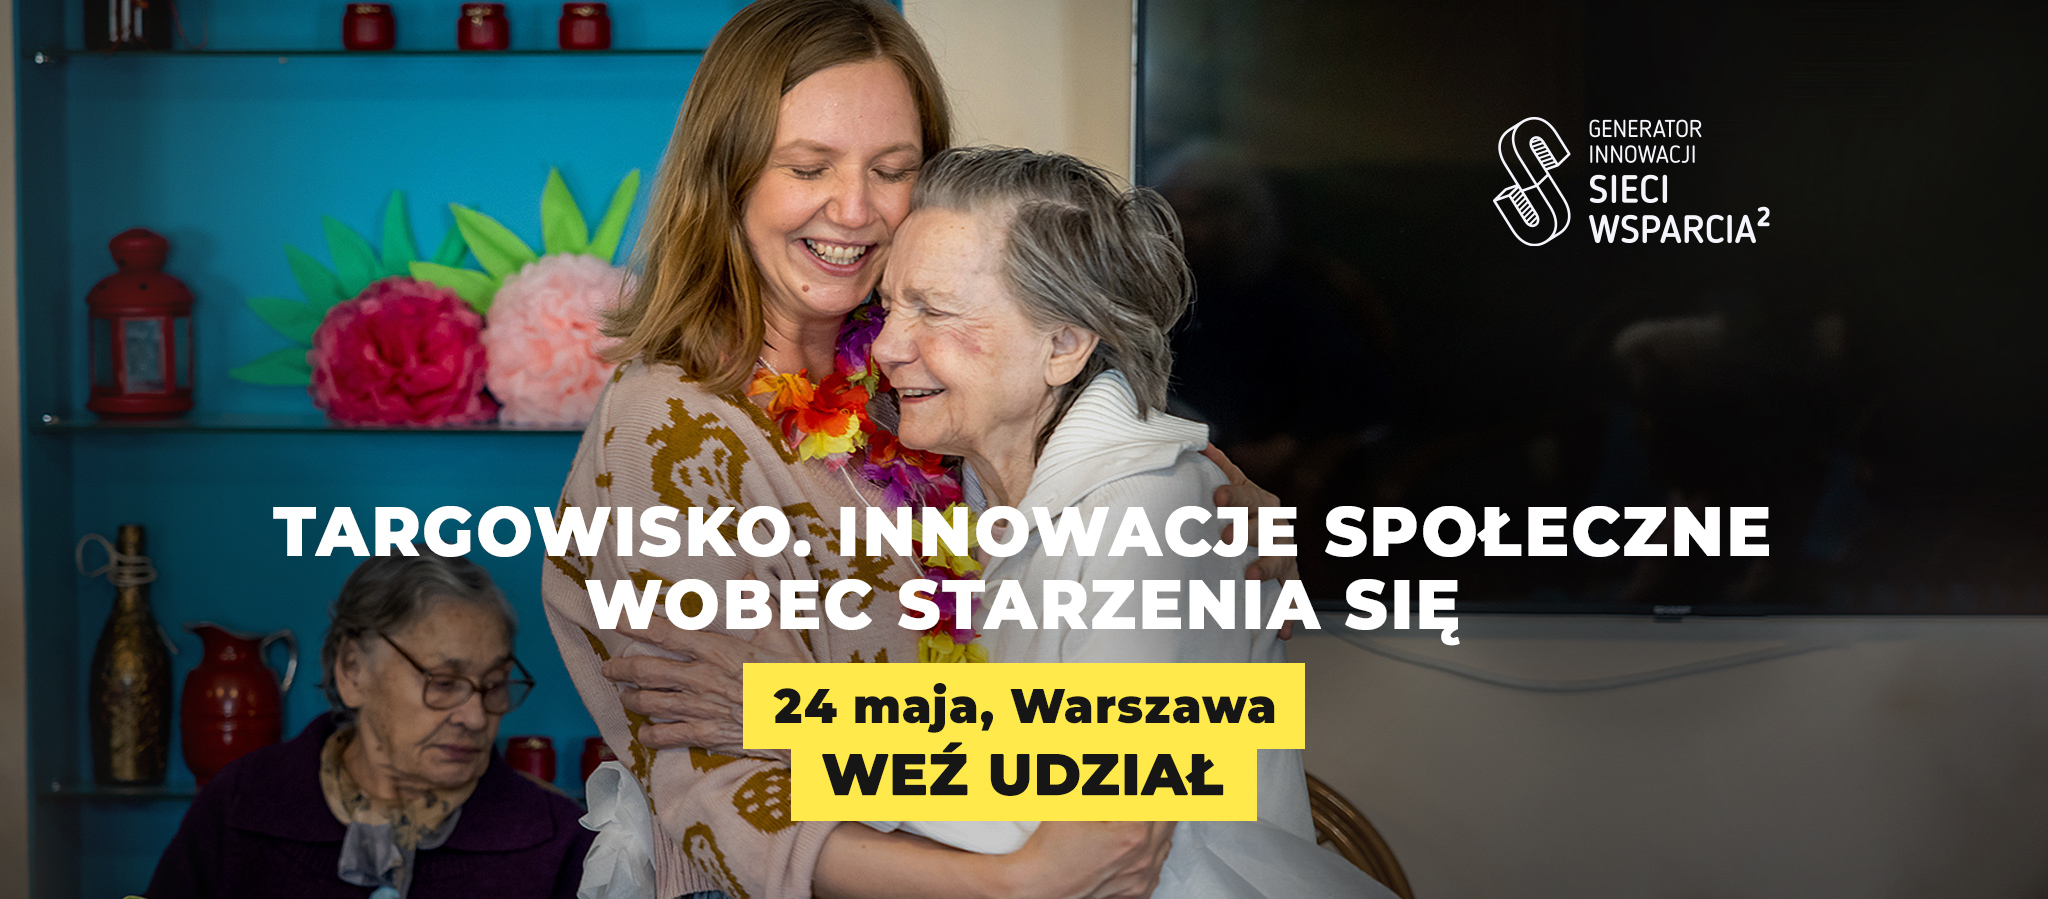 Nazwa wydarzenia "Targowisko. Innowacje społeczne wobec starzenia się.", 24 maja Warszawa. Weź udział! W tle zdjęcie starszej i młodszej kobiety przytulających się i uśmiechających.